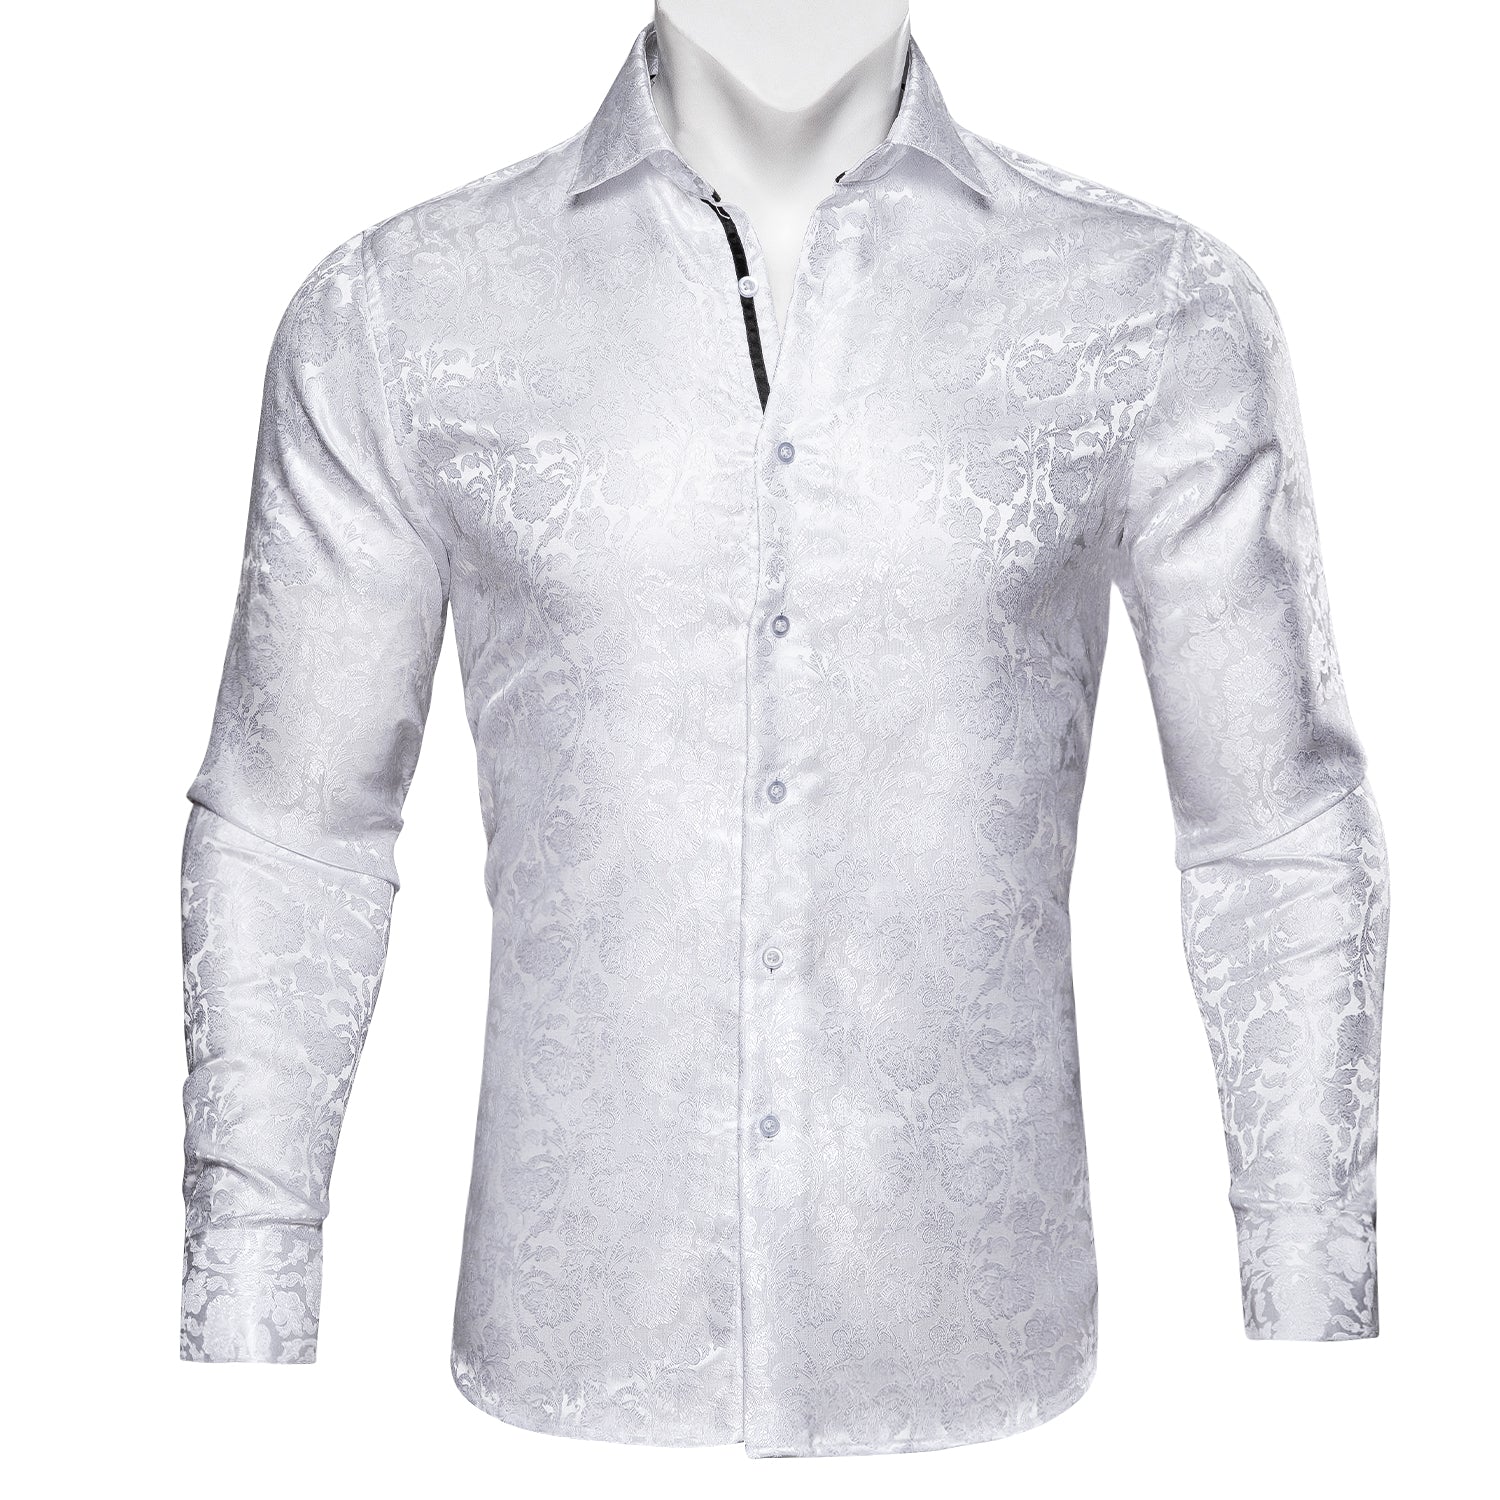 White shirt long sleeve shirt for men 